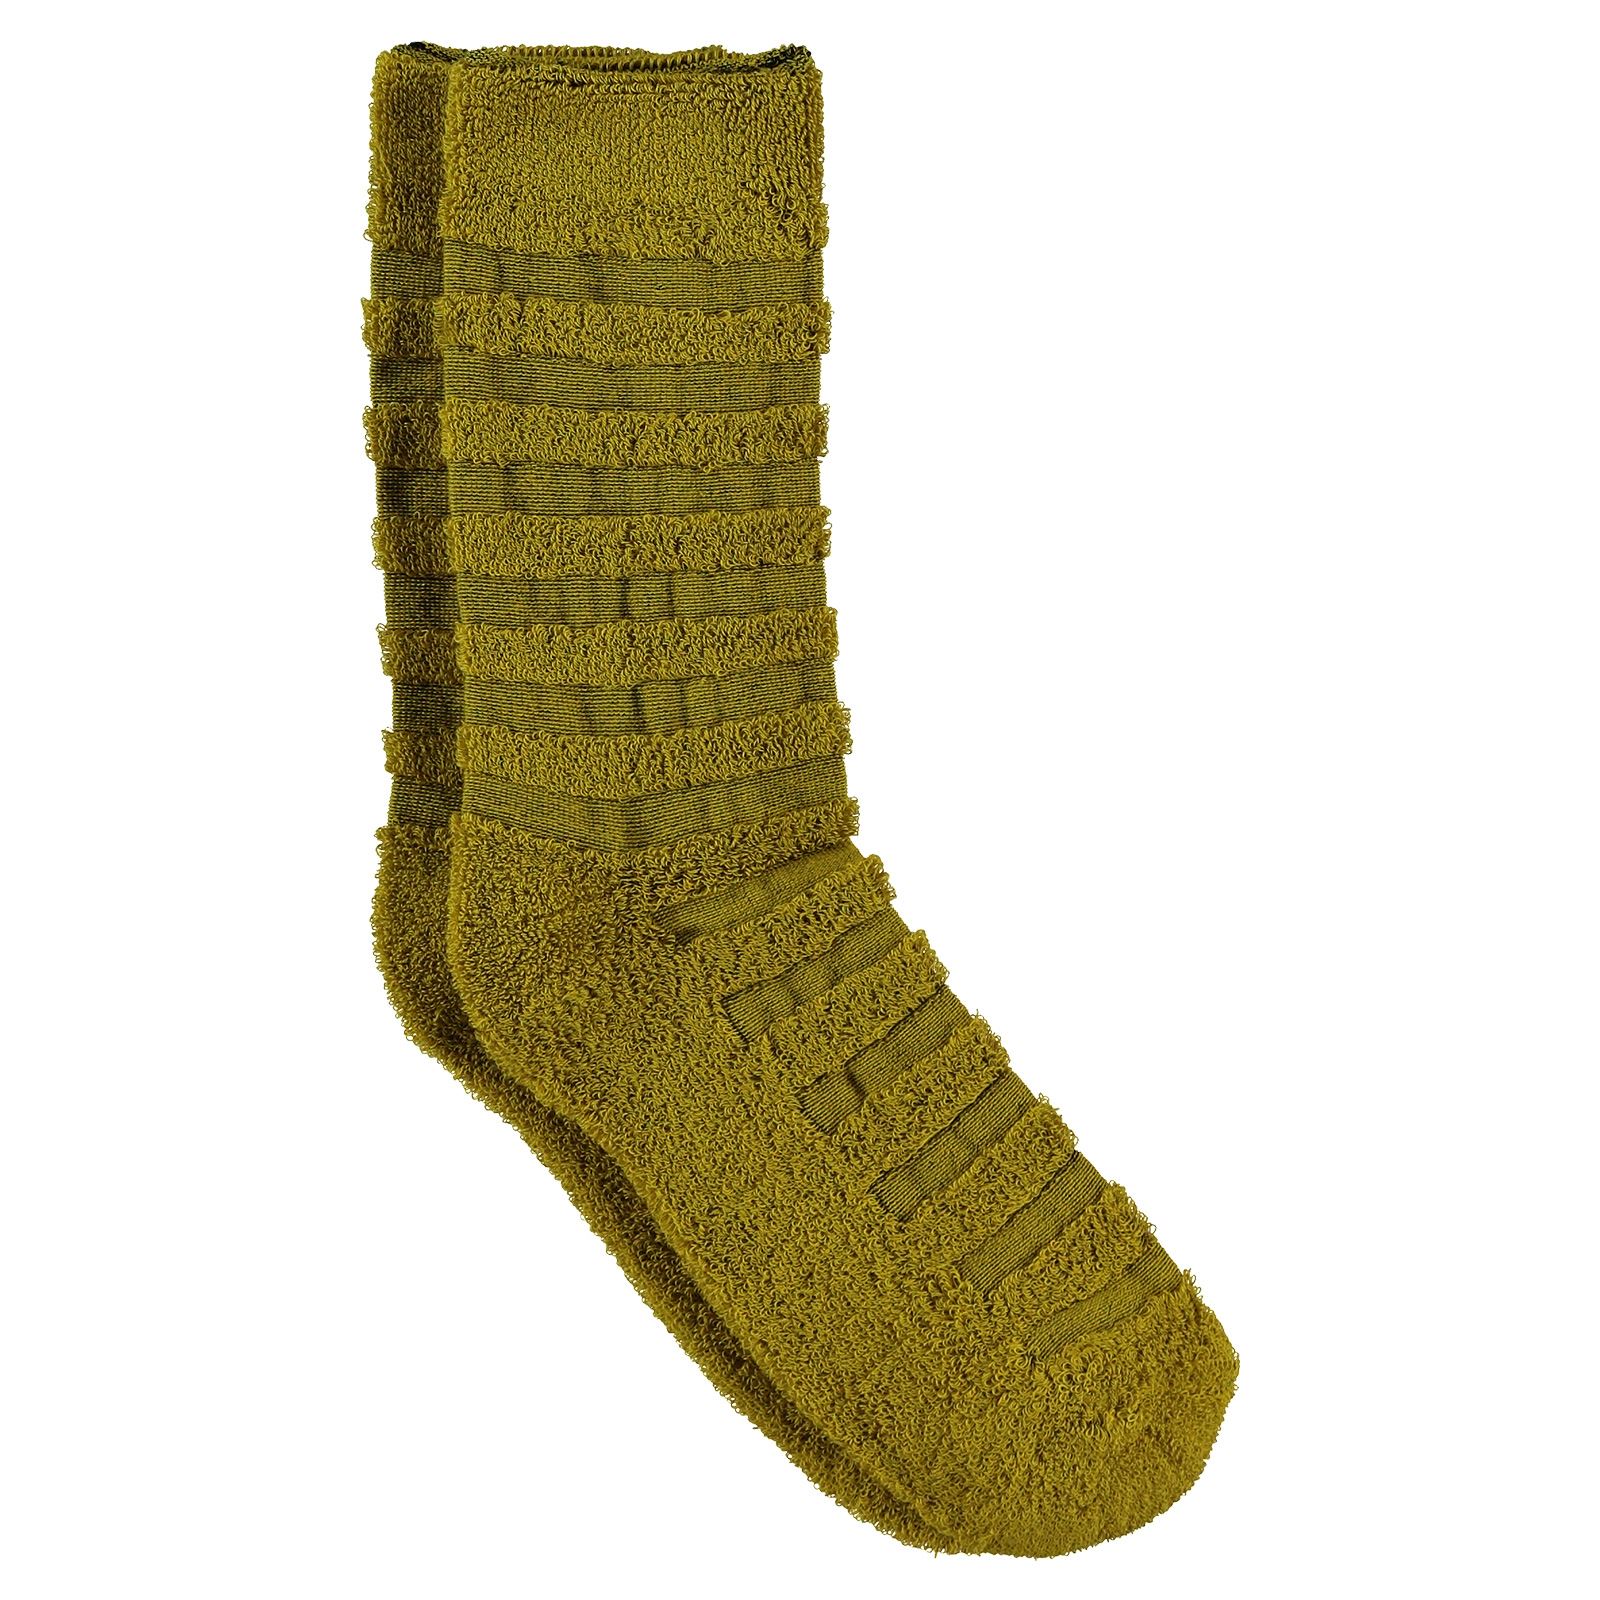 Bella Calze Kız Çocuk Ters Havlu Soket Çorap 36-40 Numara Hardal